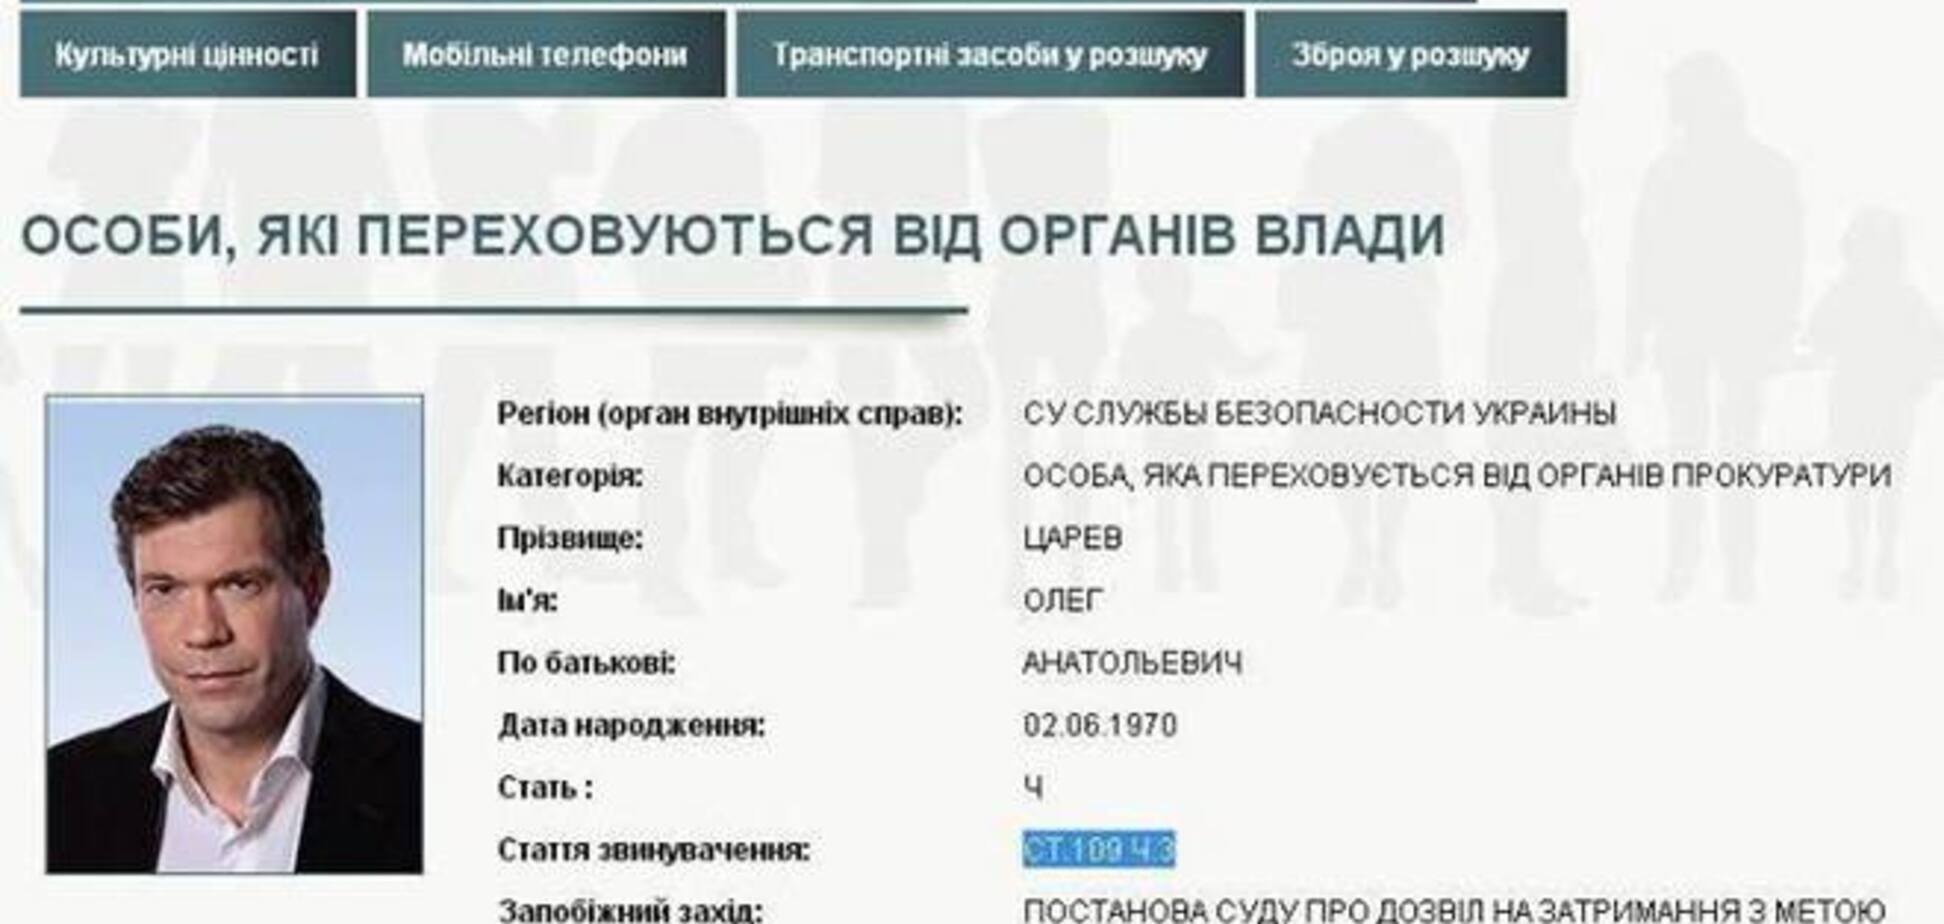 Оголошений в розшук Царьов передав силовикам привіт з Донецька